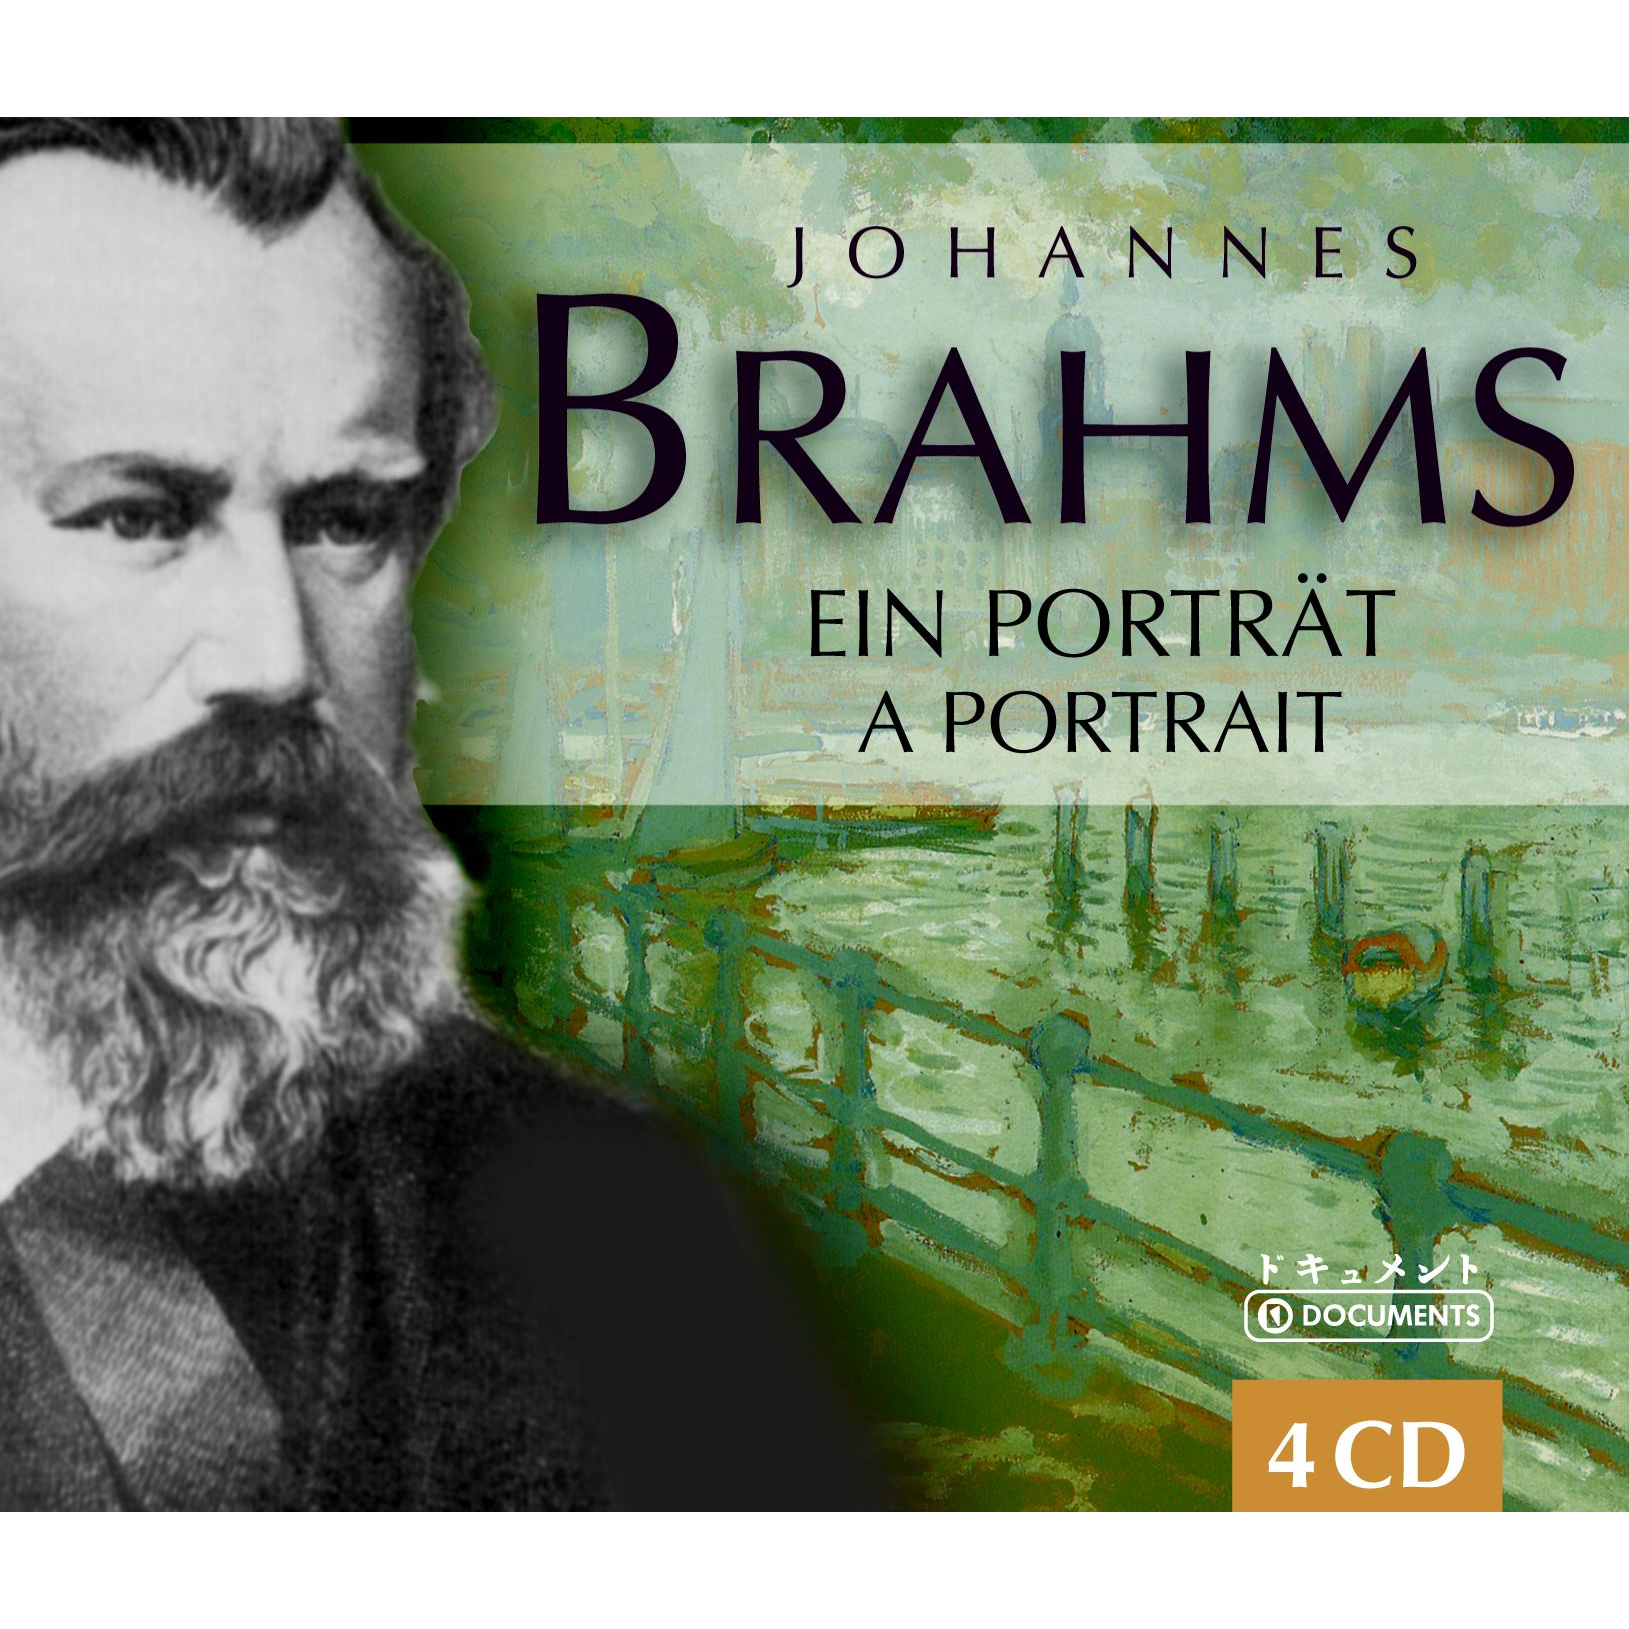 BRAHMS: EIN PORTRAIT